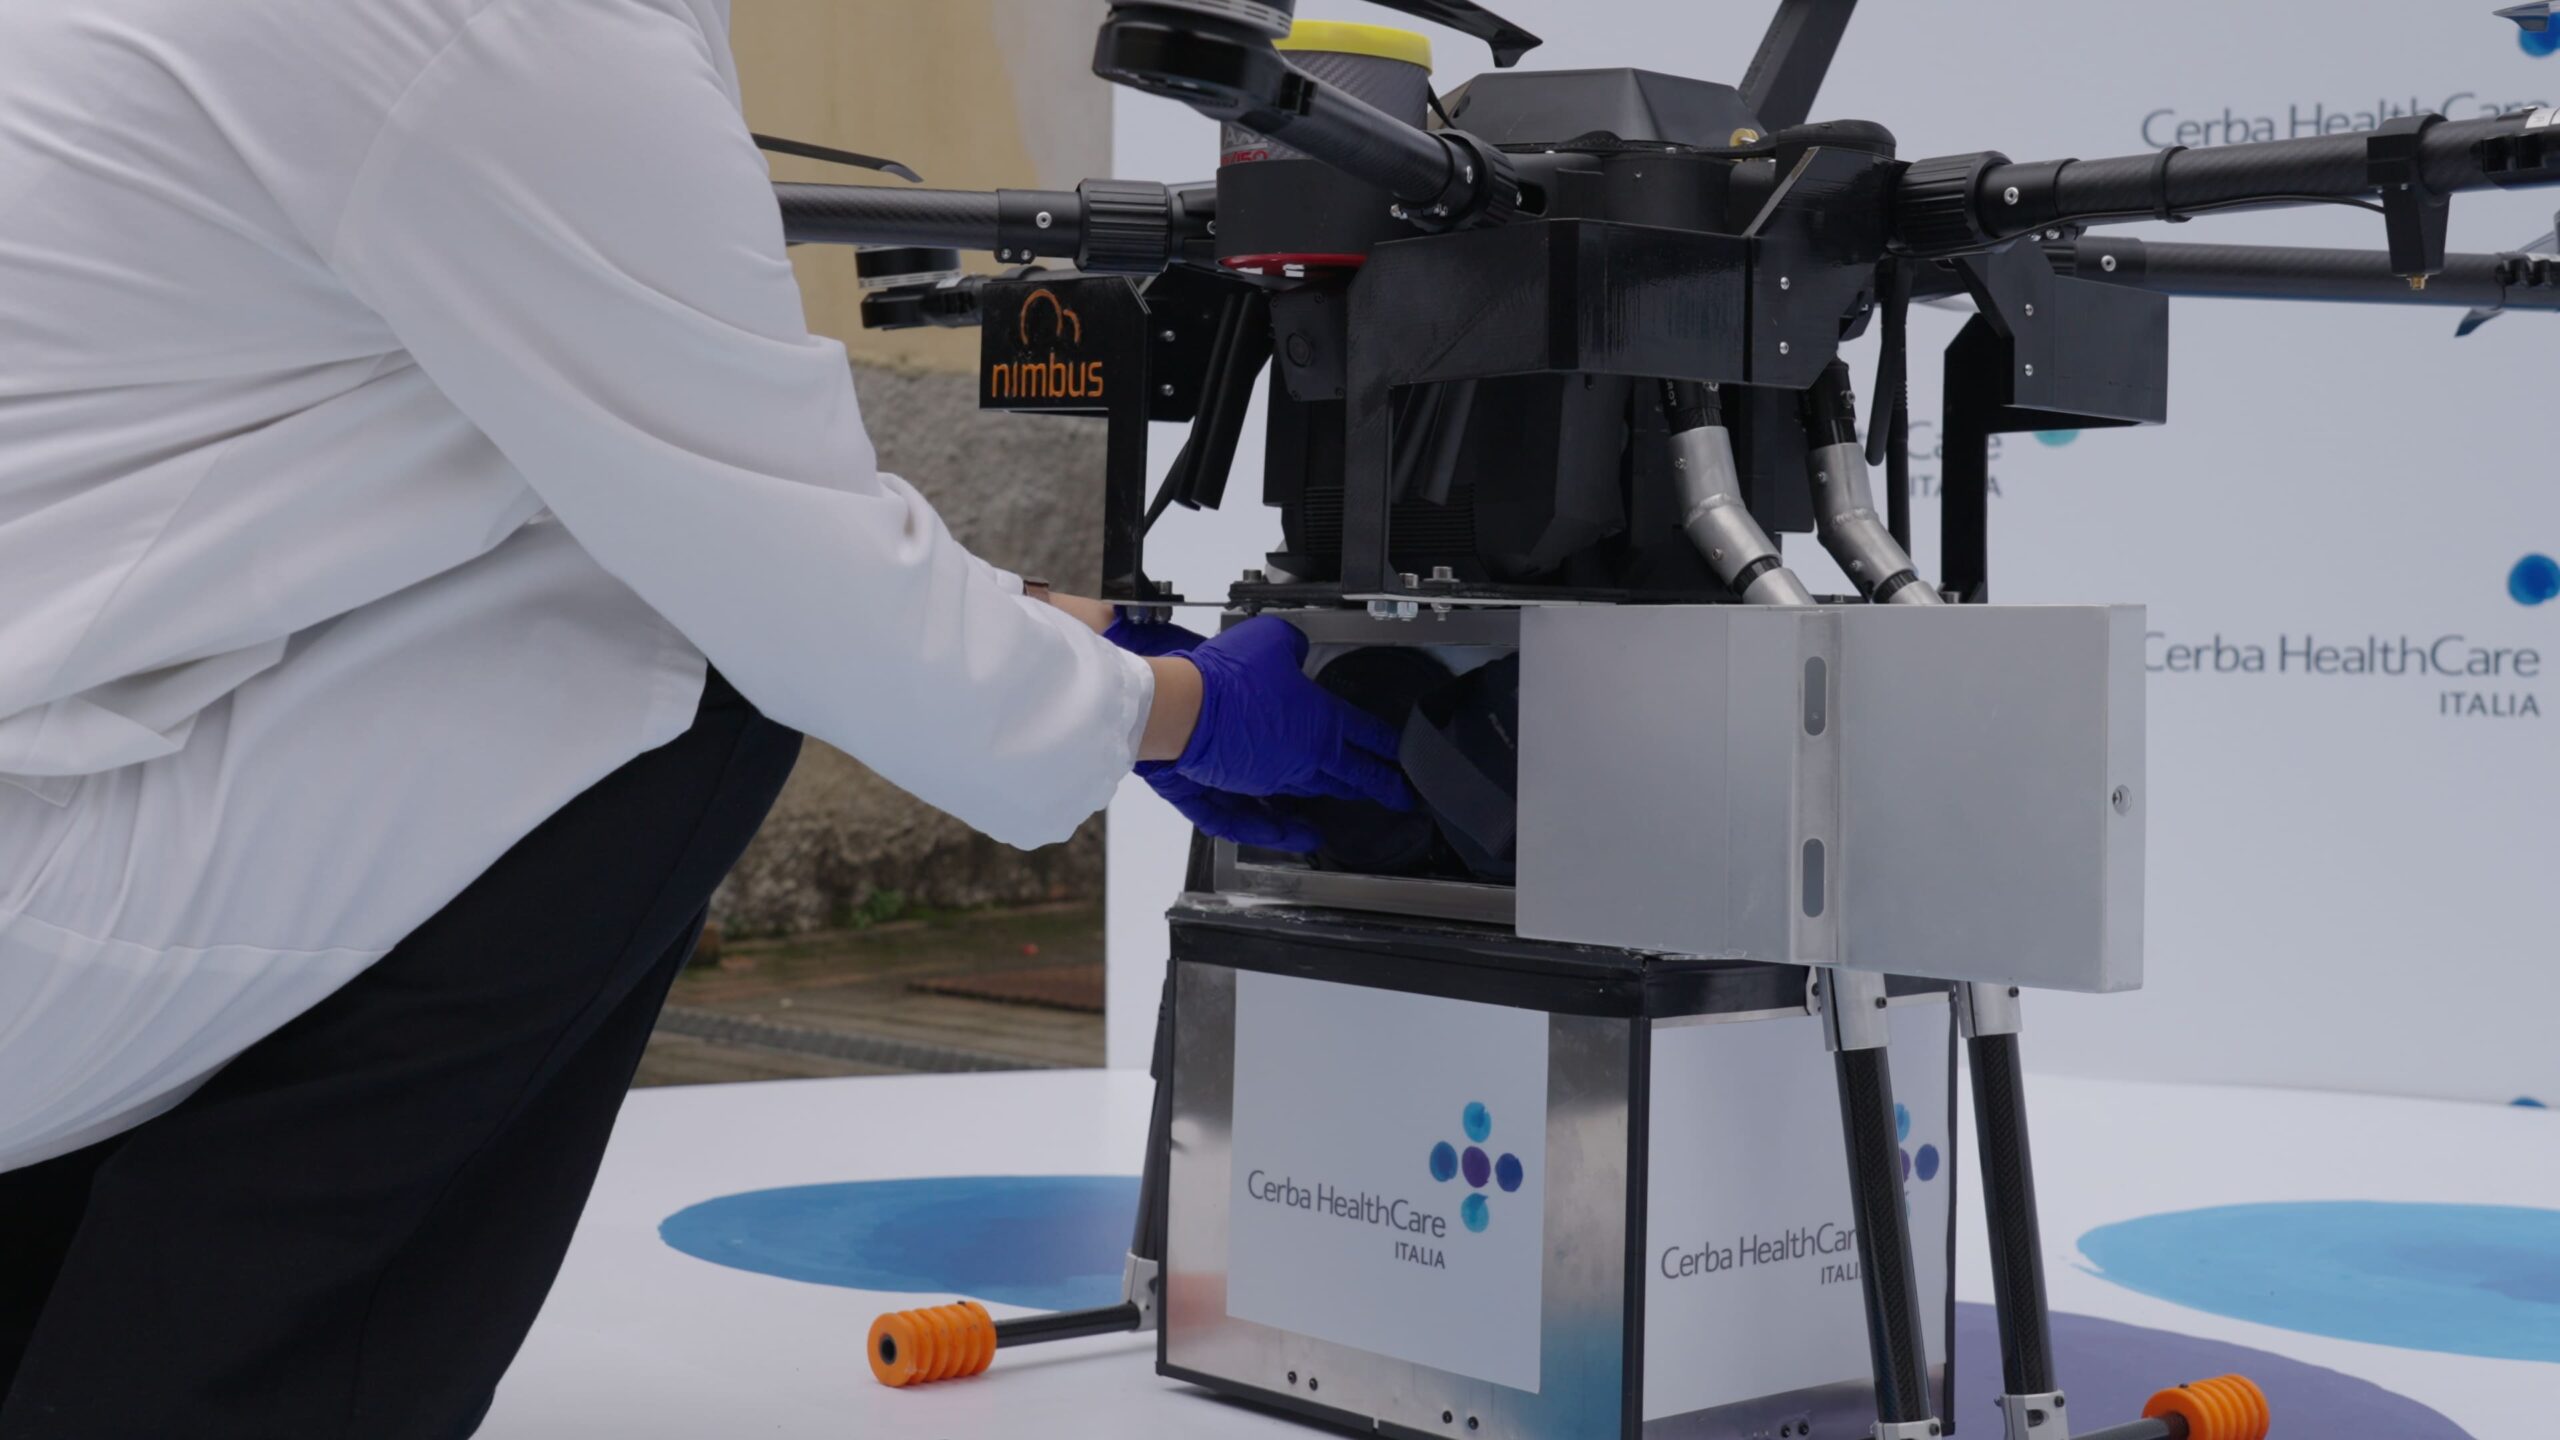 Operatore inserisce campione biologico nel drone